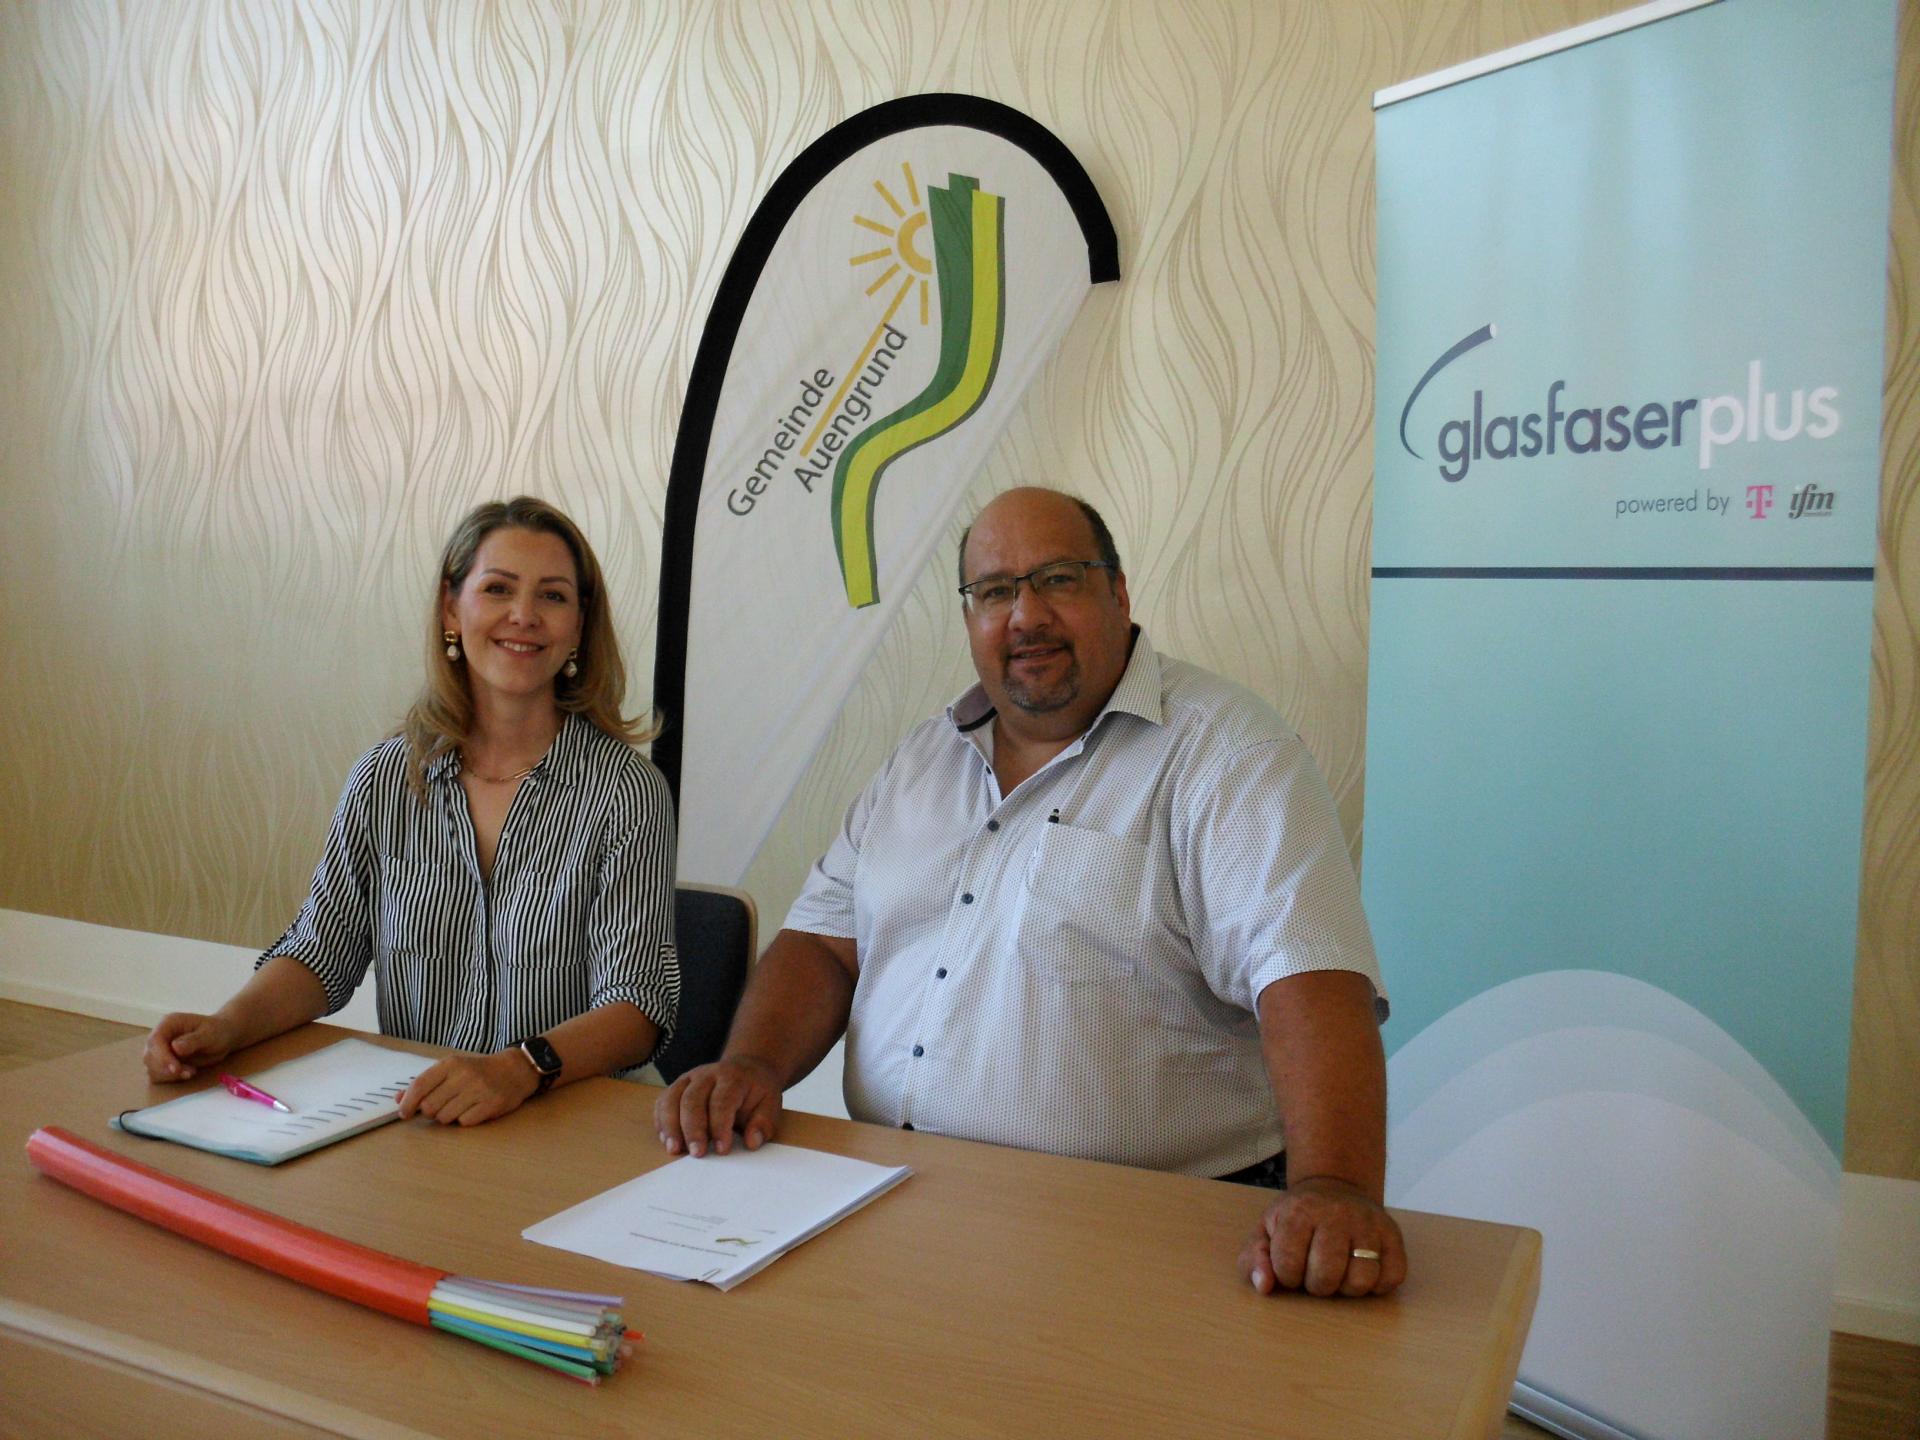 Unterzeichnung gemeinsamer Erklärung zwischen der Gemeinde Auengrund und GlasfaserPlus am 21.08.2023same Erklärung unterzeichnet.